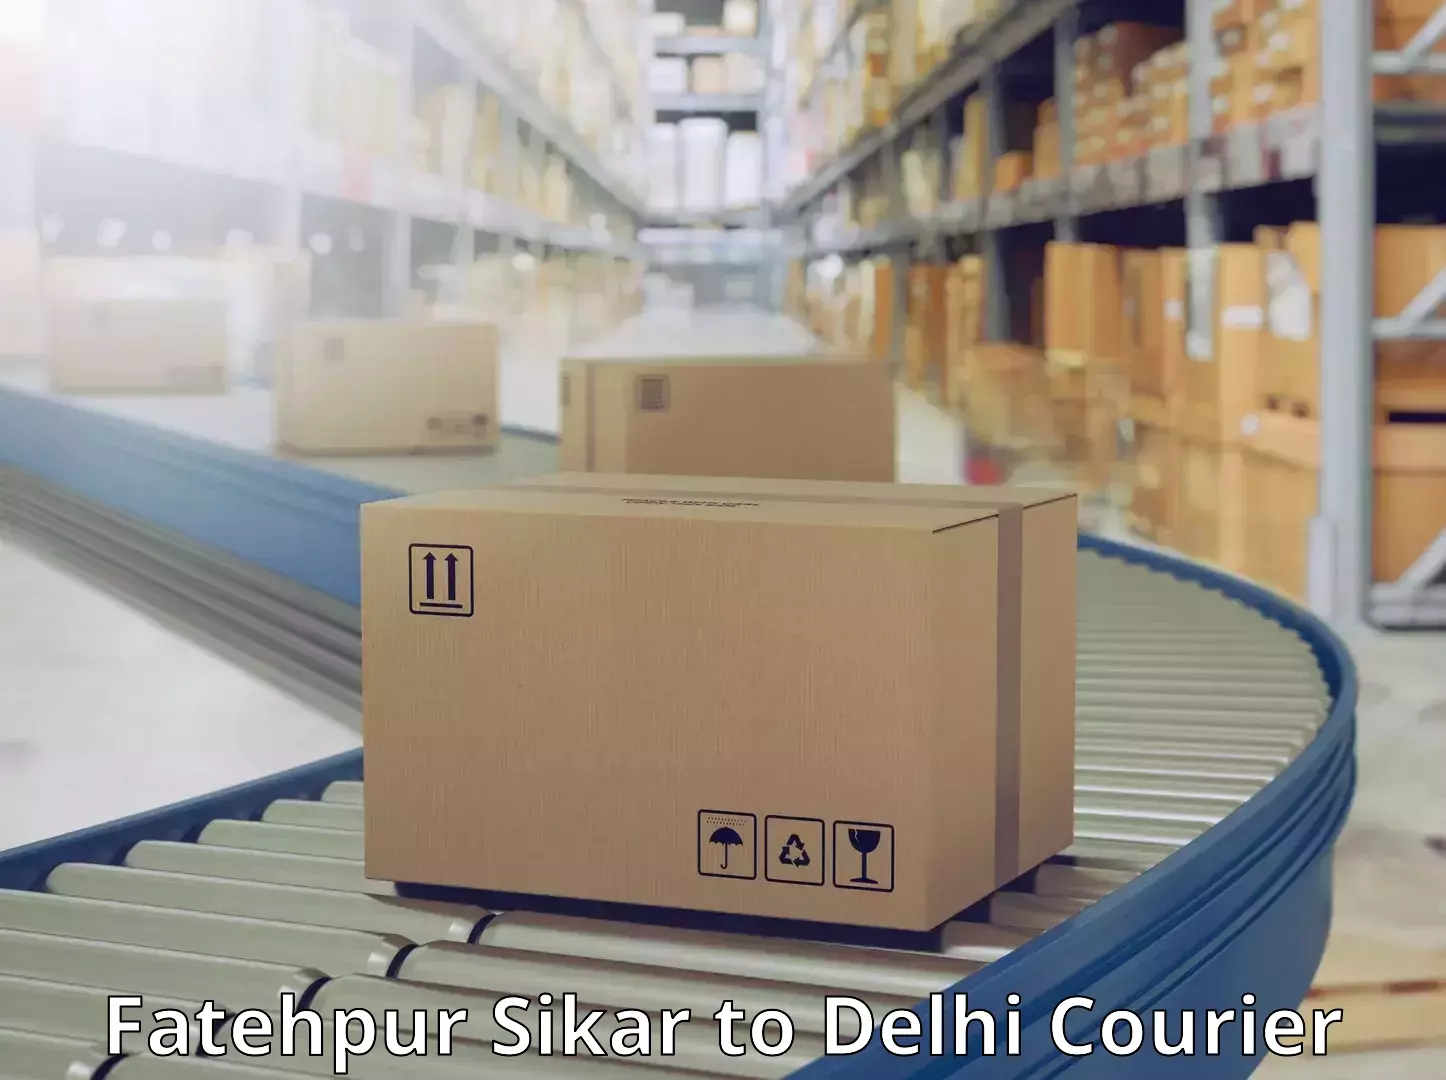 Pharmaceutical courier Fatehpur Sikar to University of Delhi